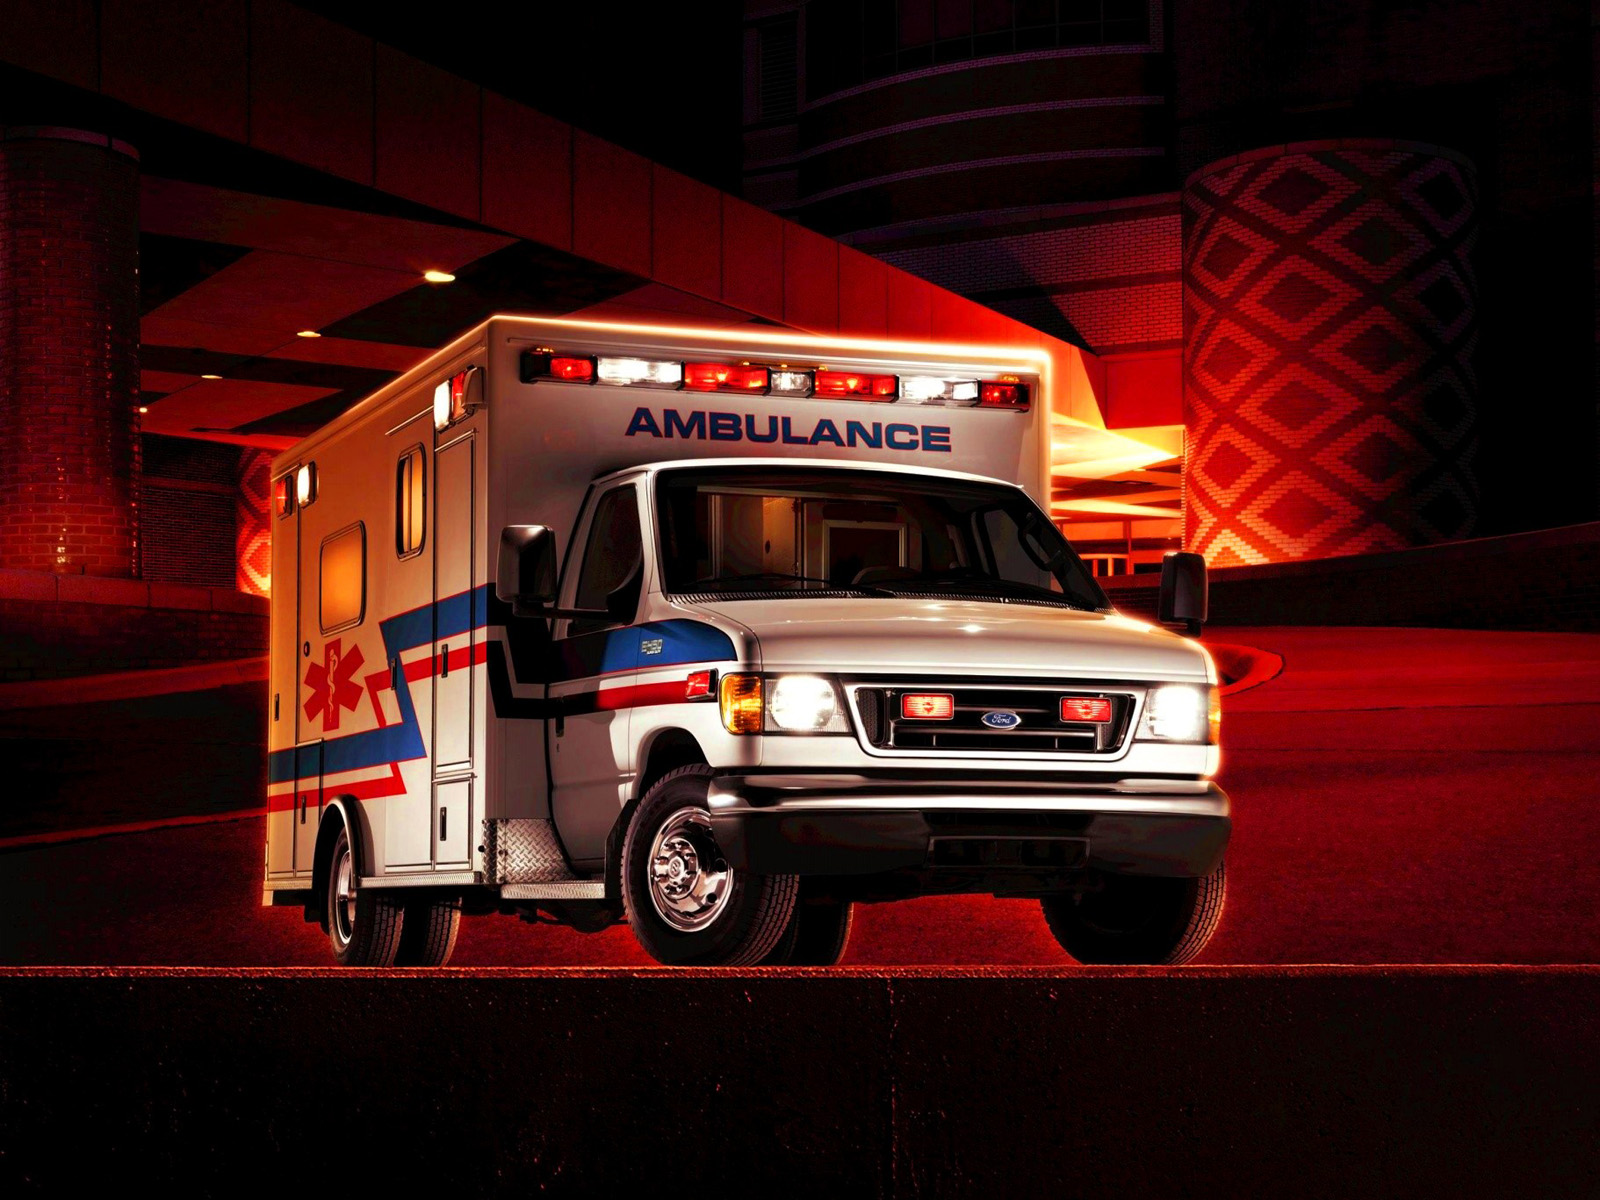 24*7 ambulance